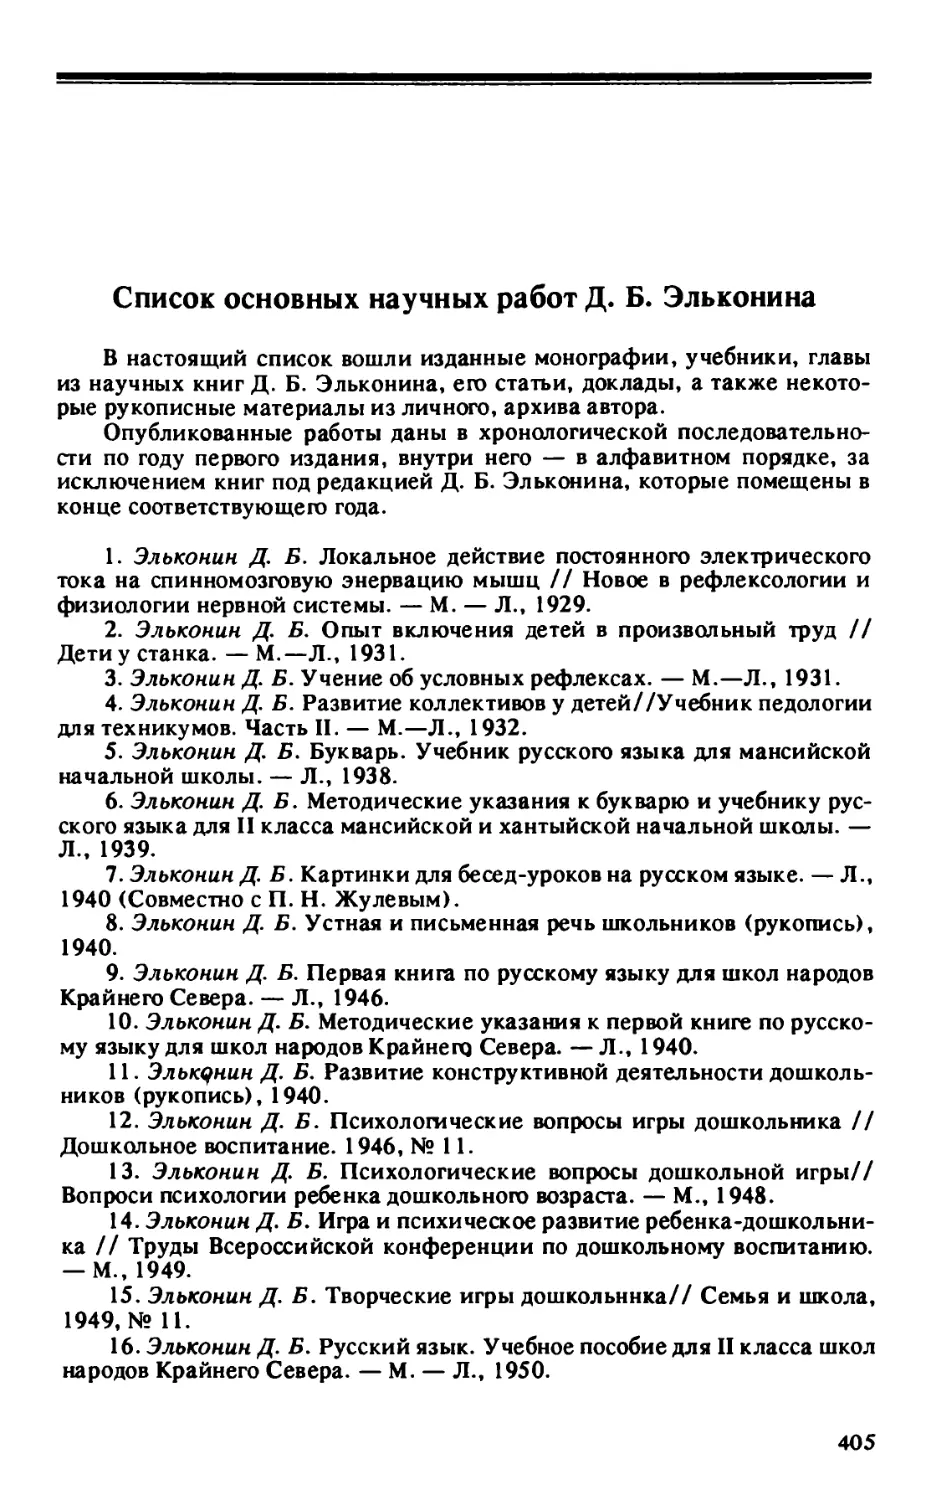 Список основных научных работ Д.Б. Эльконина